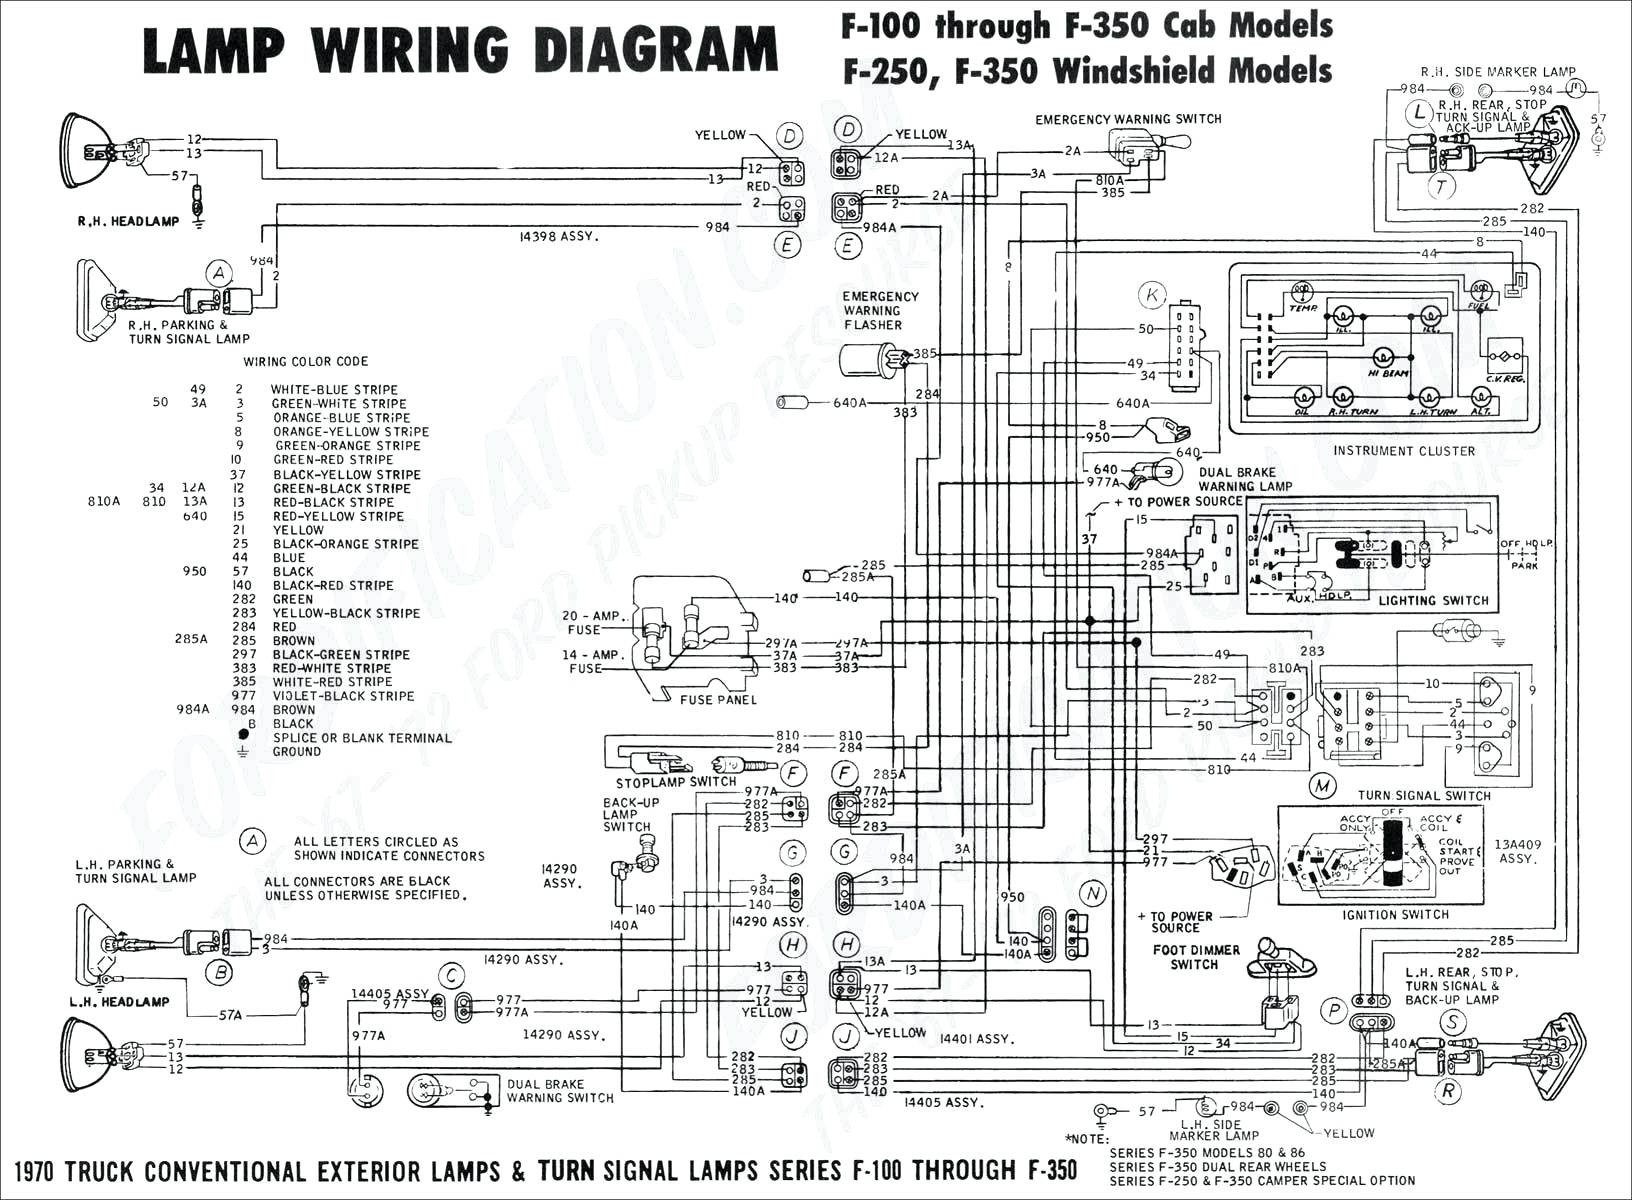 Motorguide Trolling Motor Wiring Diagram Best Motorguide Trolling Motor Wiring Diagram Samples